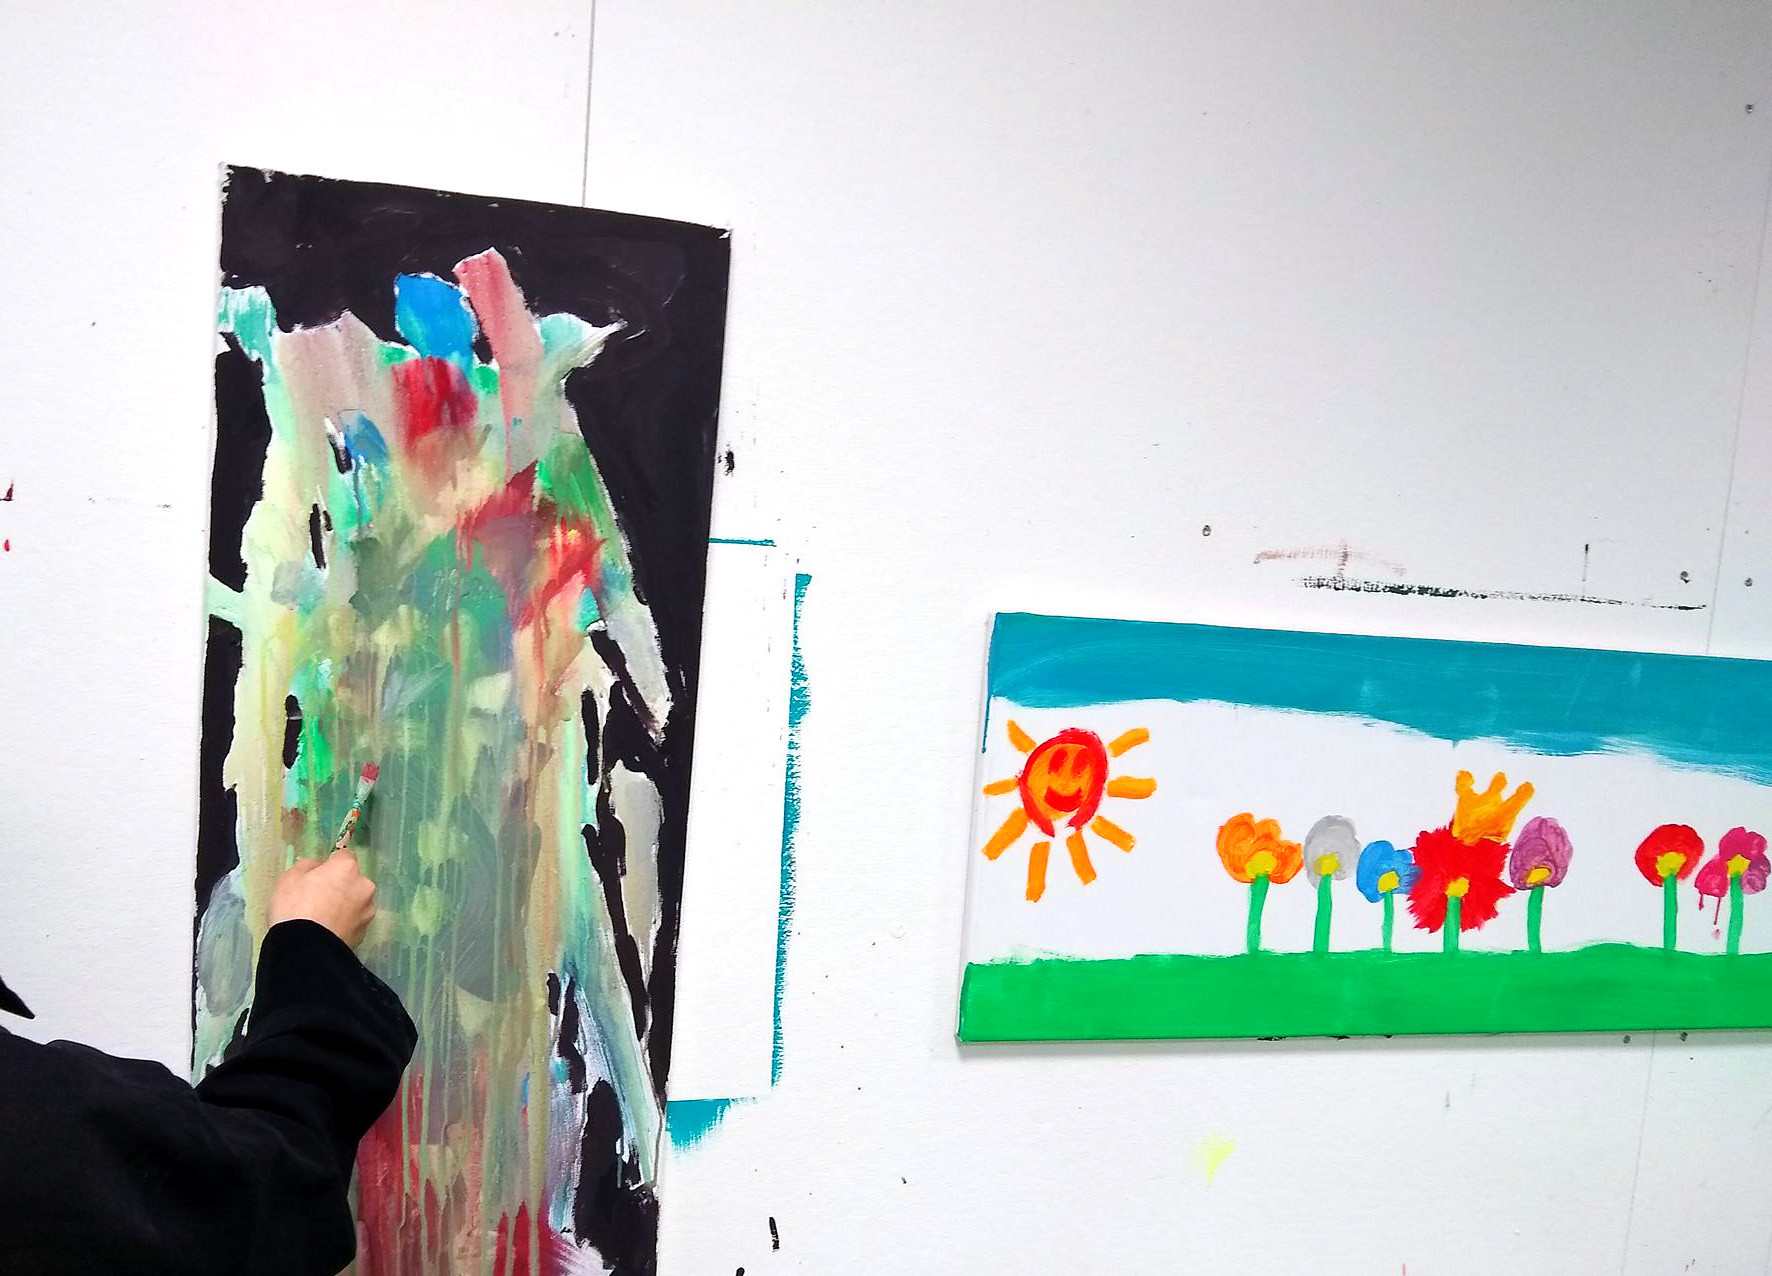 Kind malt im Stehen an der Wand ein abstraktes Bild mit leuchtenden Farben